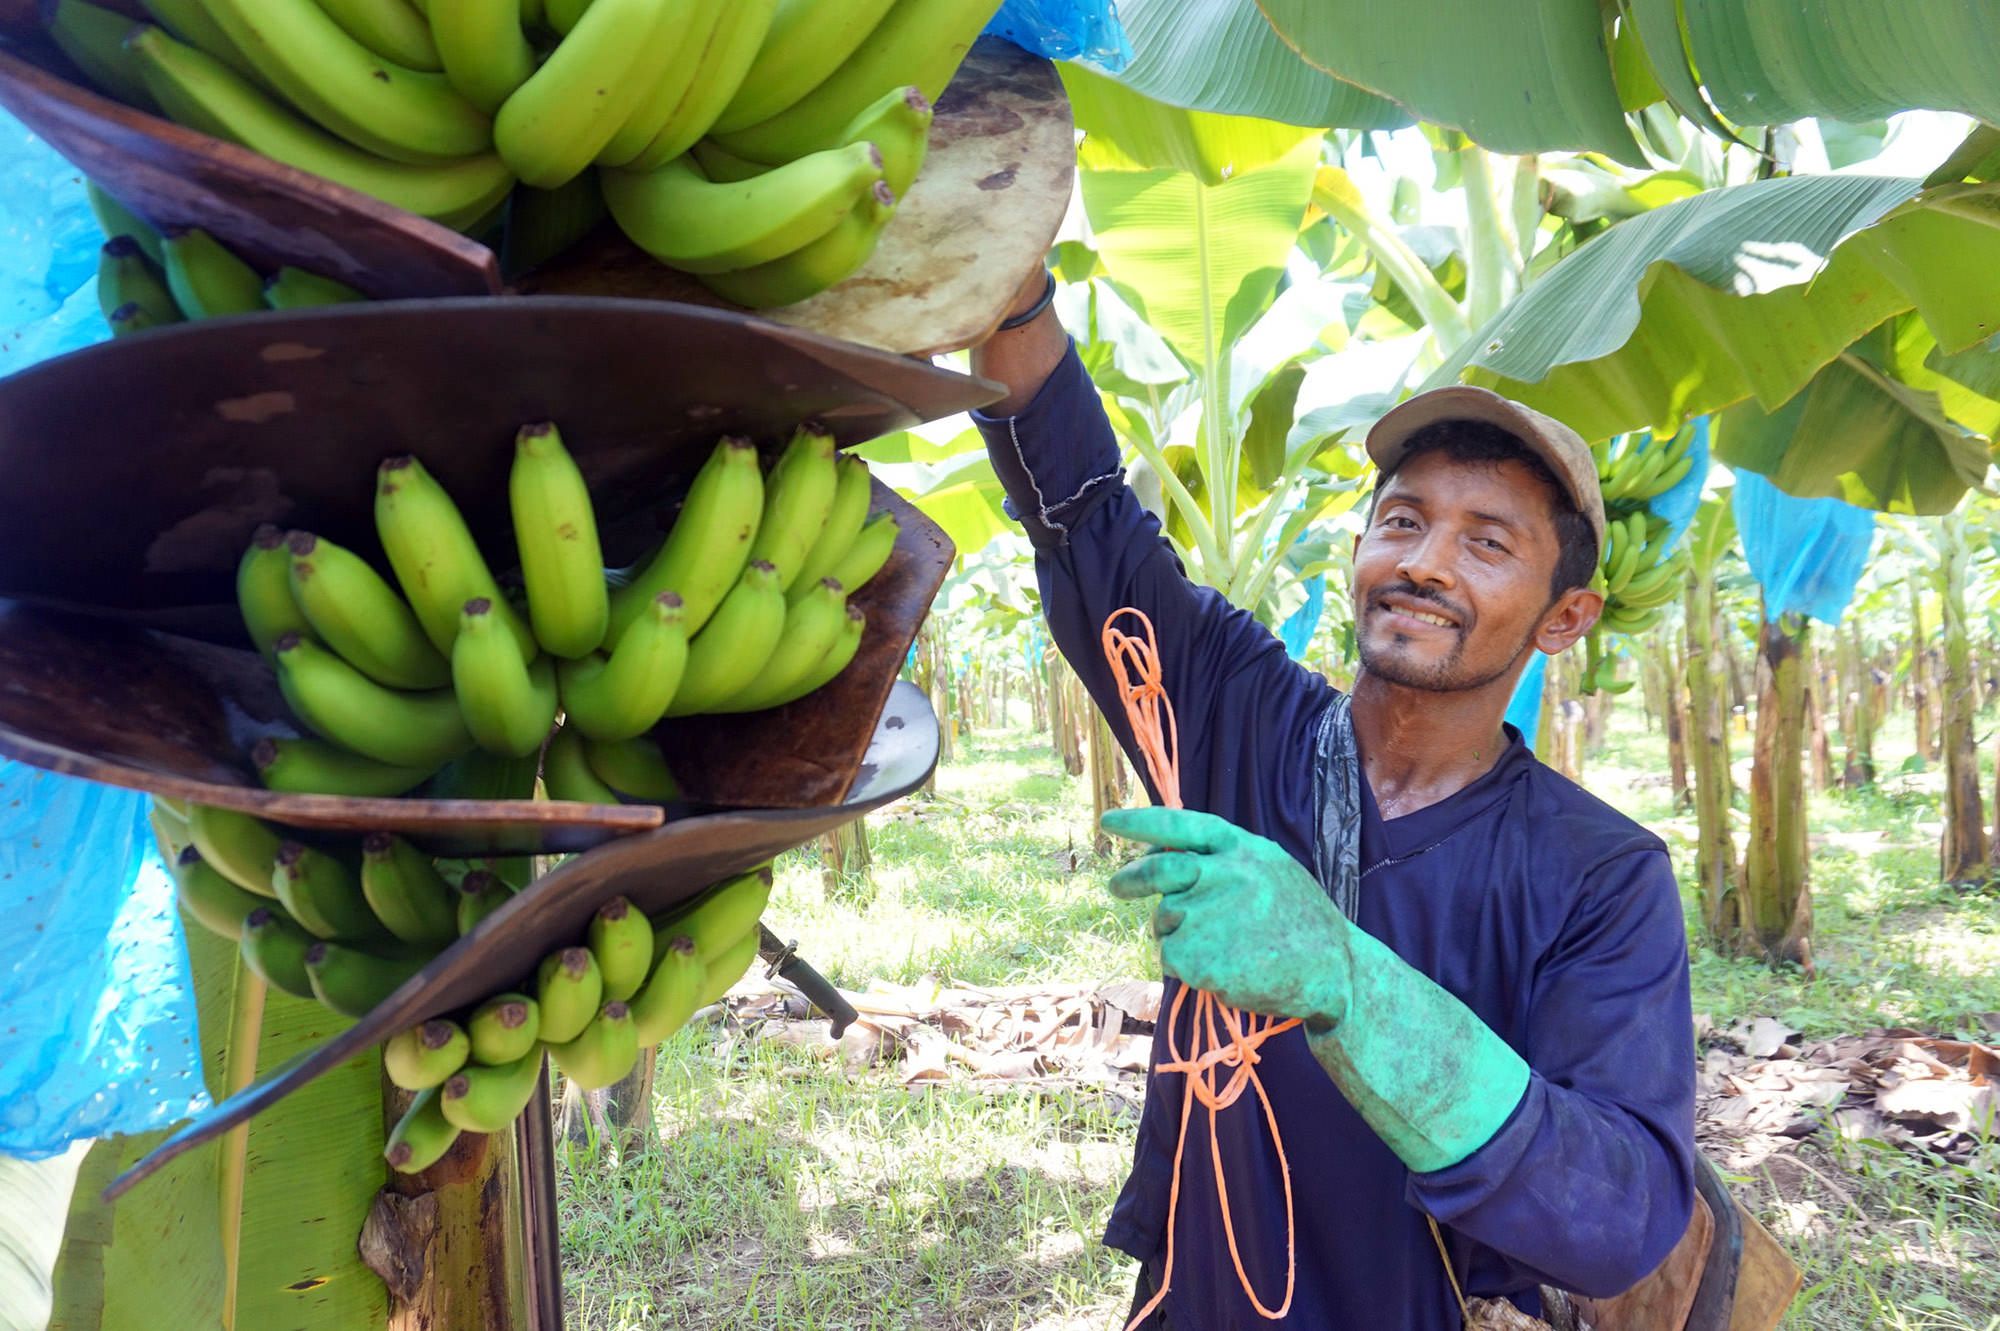 https://www.rainforest-alliance.org/wp-content/uploads/2021/07/costa-rica-banana-farmer.jpg.optimal.jpg